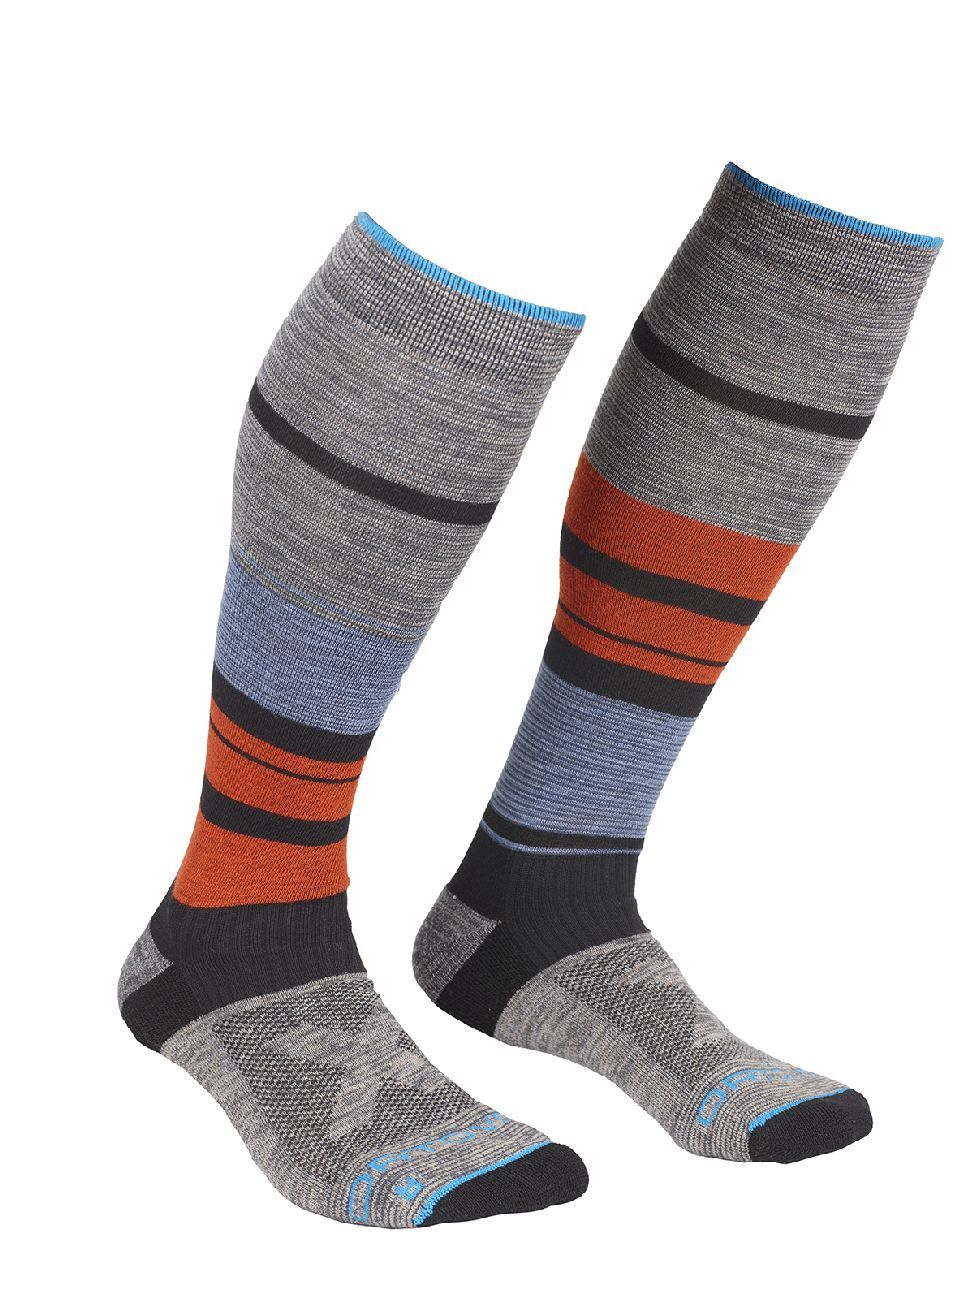 Ortovox All Mountain Long Socks Warm - Skisocken - Herren